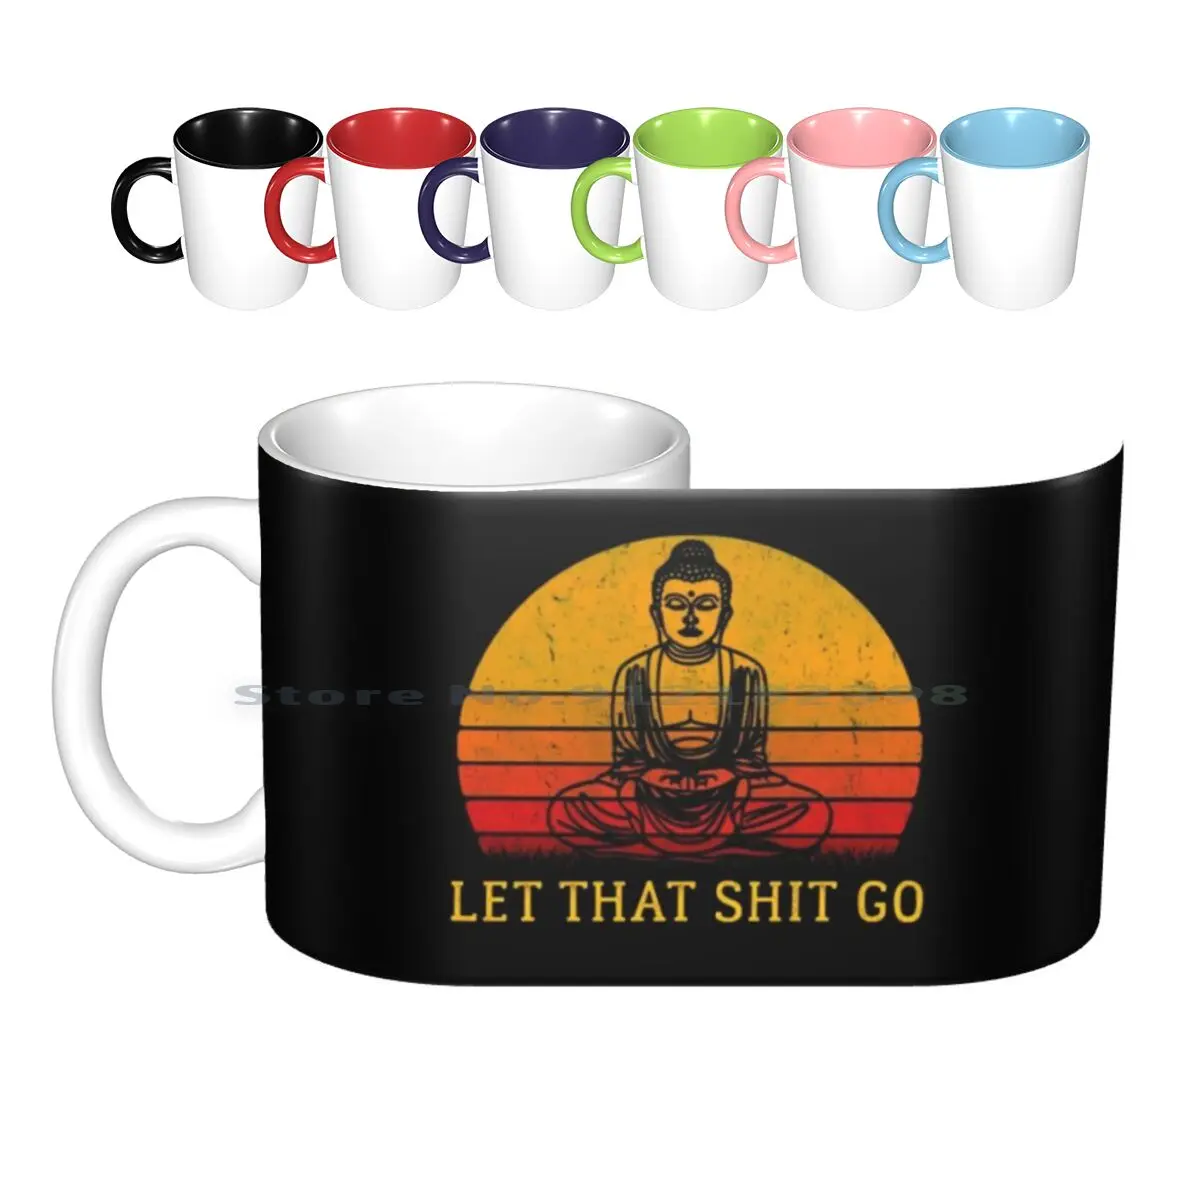 

Керамические кружки с надписью «Let That shitgo», кофейные чашки, Кружка для молока и чая, пусть это дерьмо, отпустите это дерьмо, Будда, медитация, ...